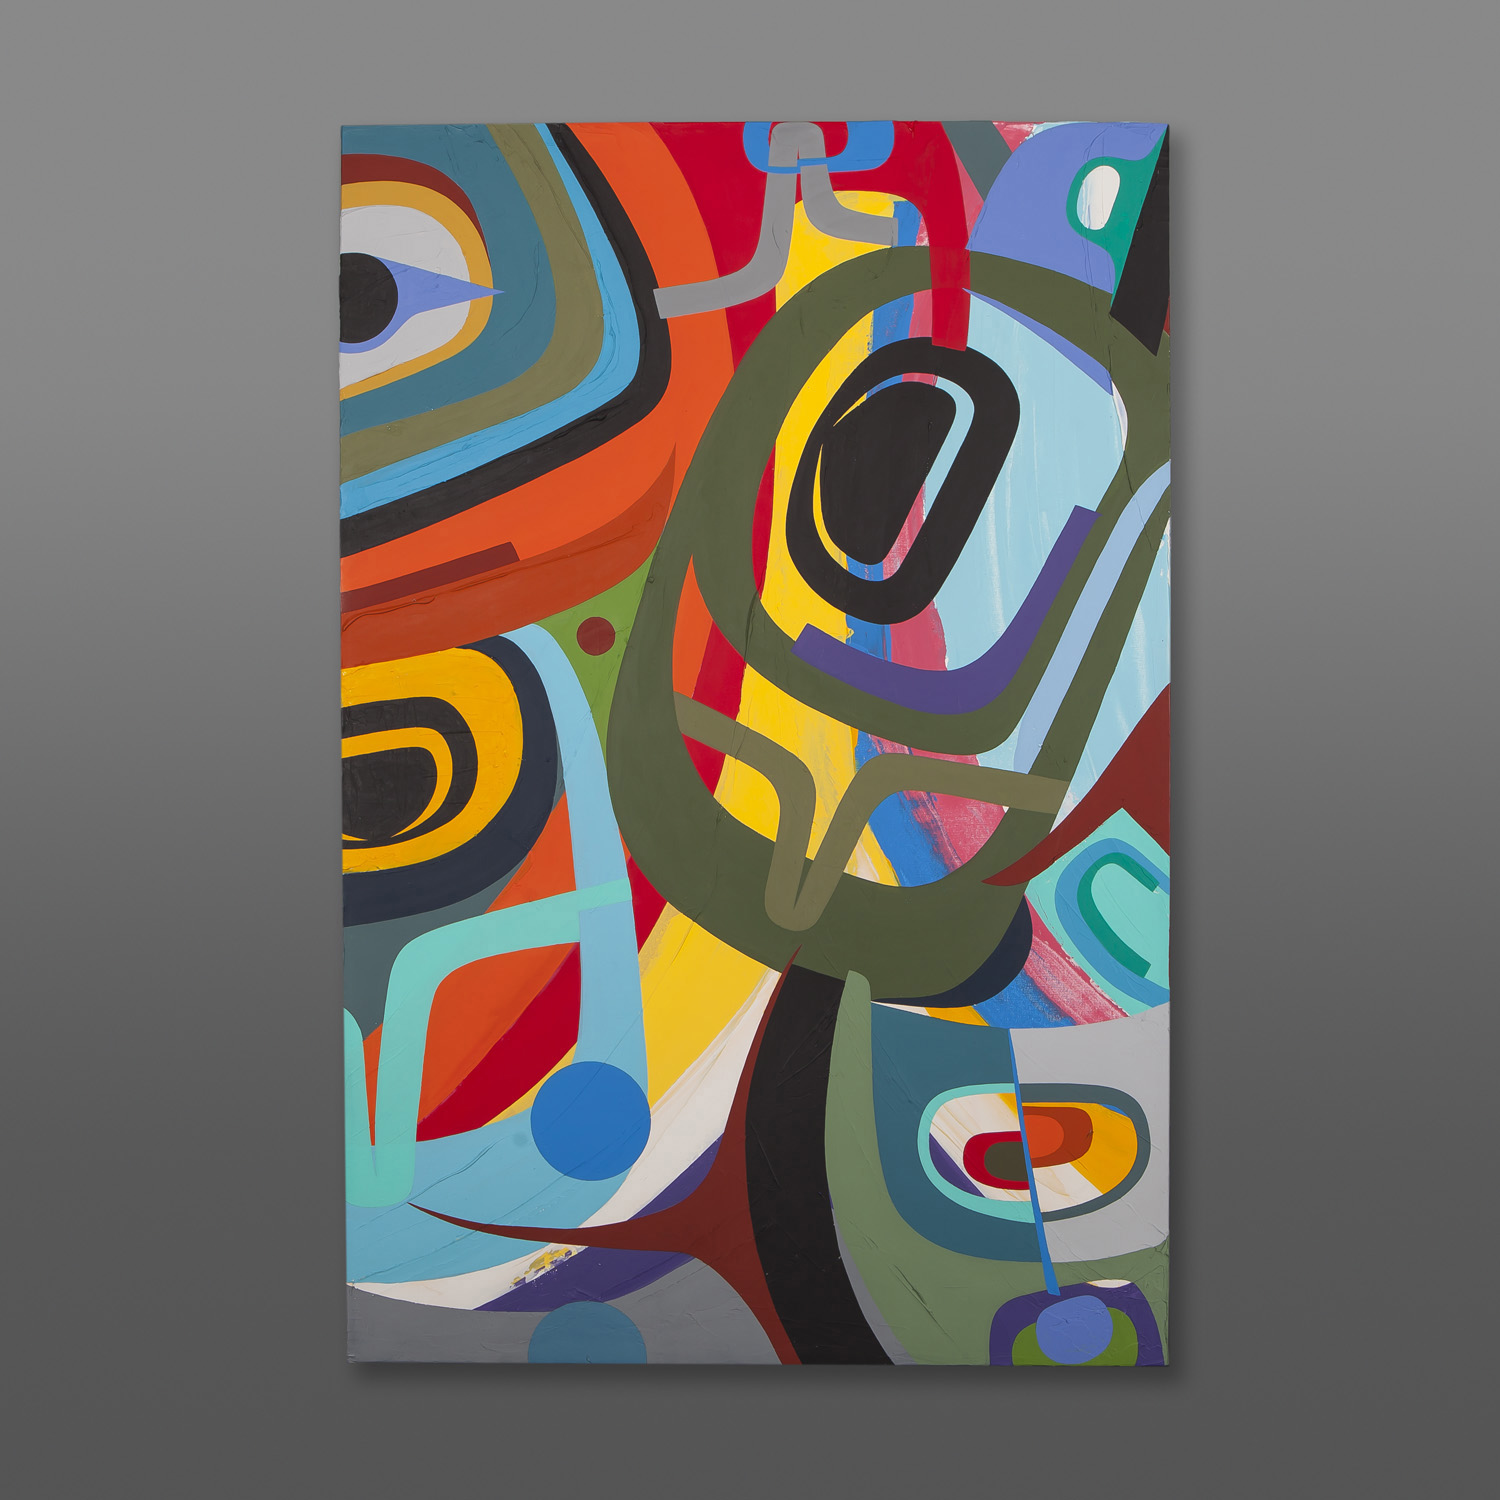 Within the Rainbow
Steve Smith - Dla'kwagila
Acrylic on canvas
36" x 24"
$4500